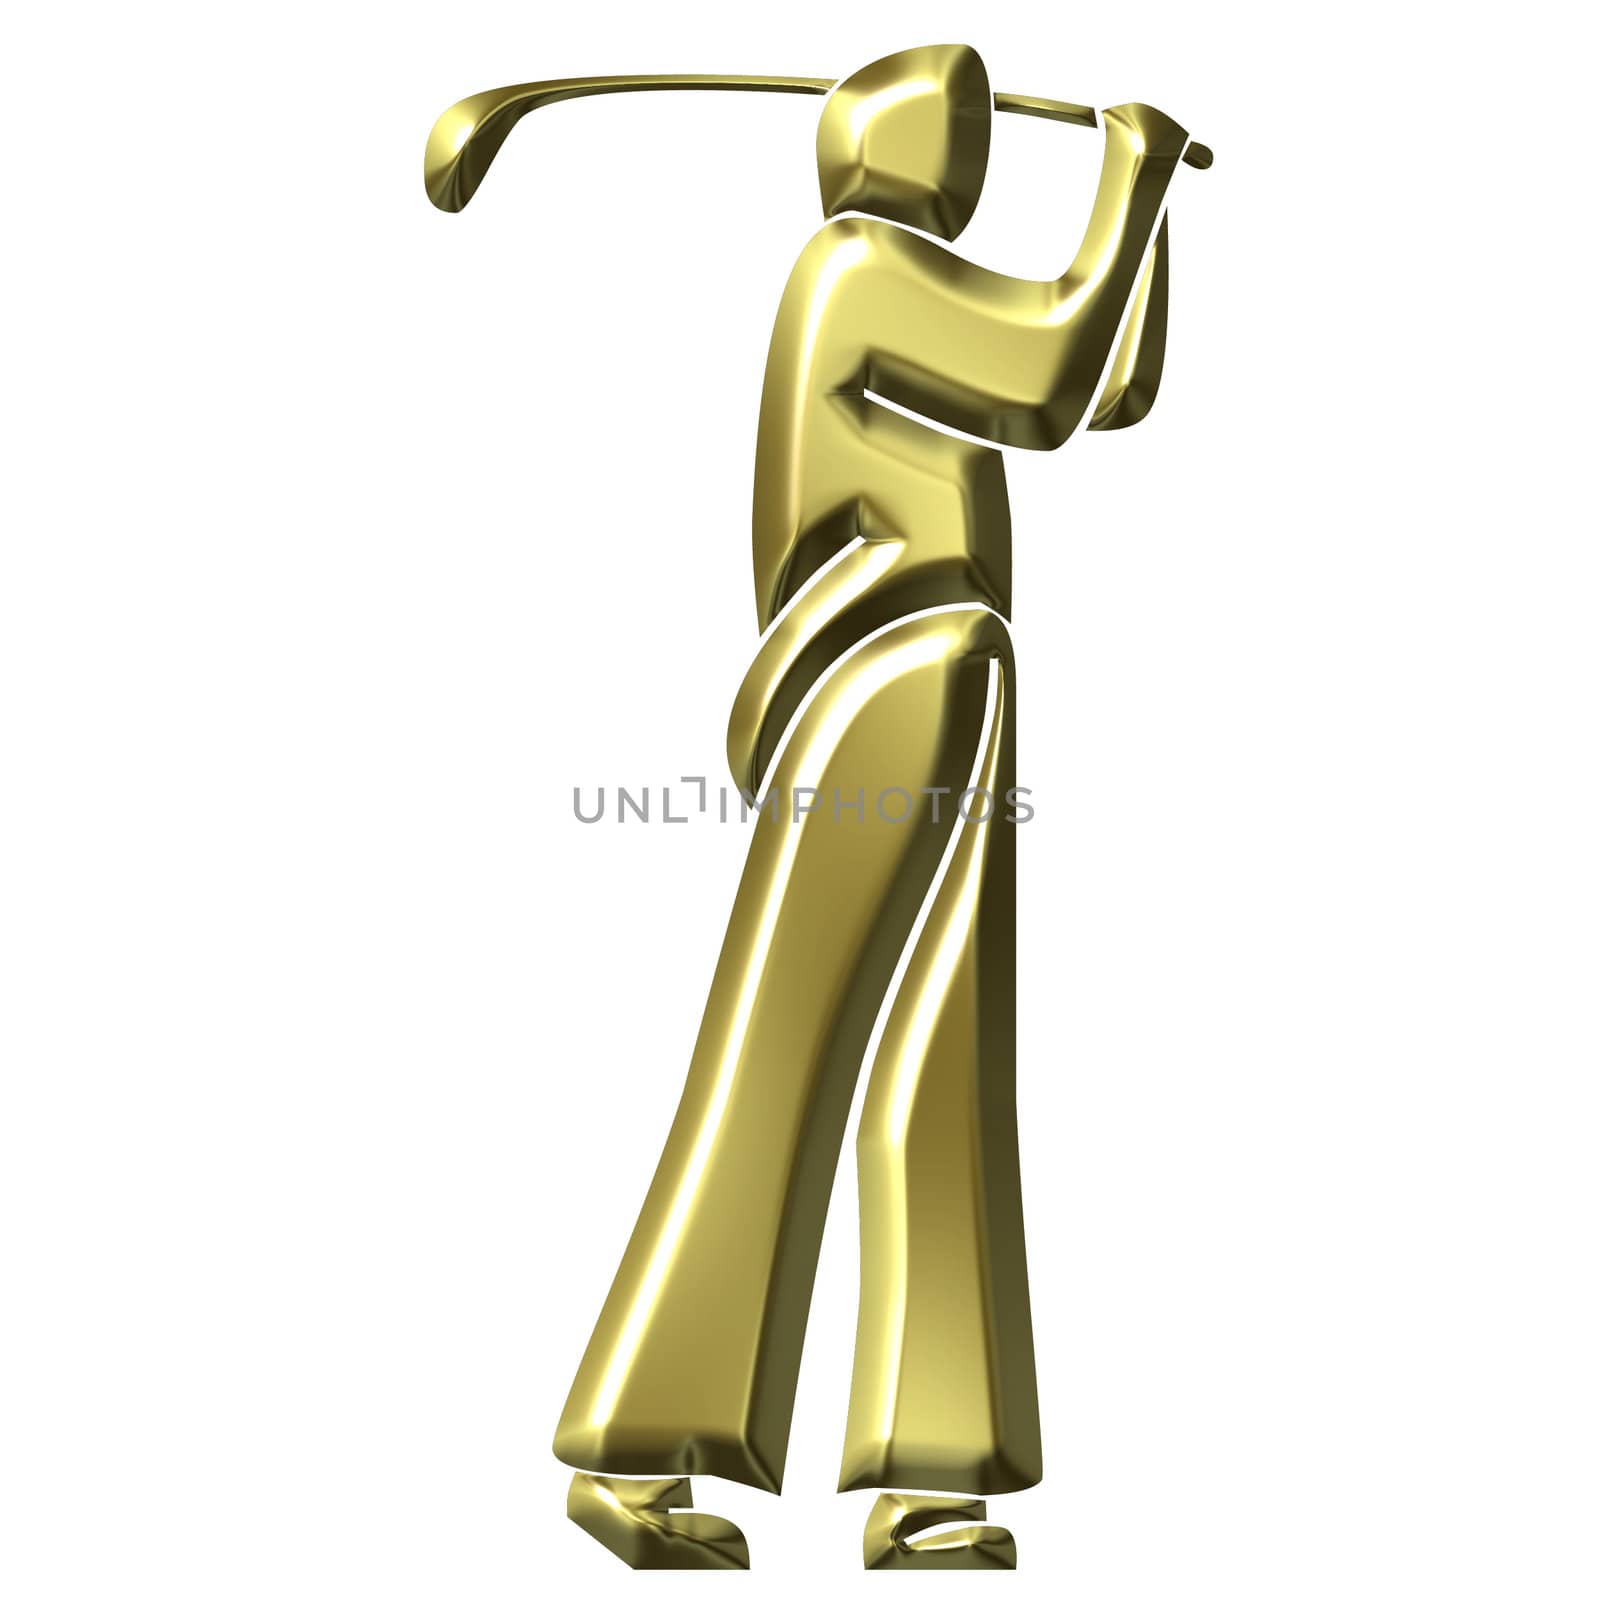 Golden Golfer by Georgios